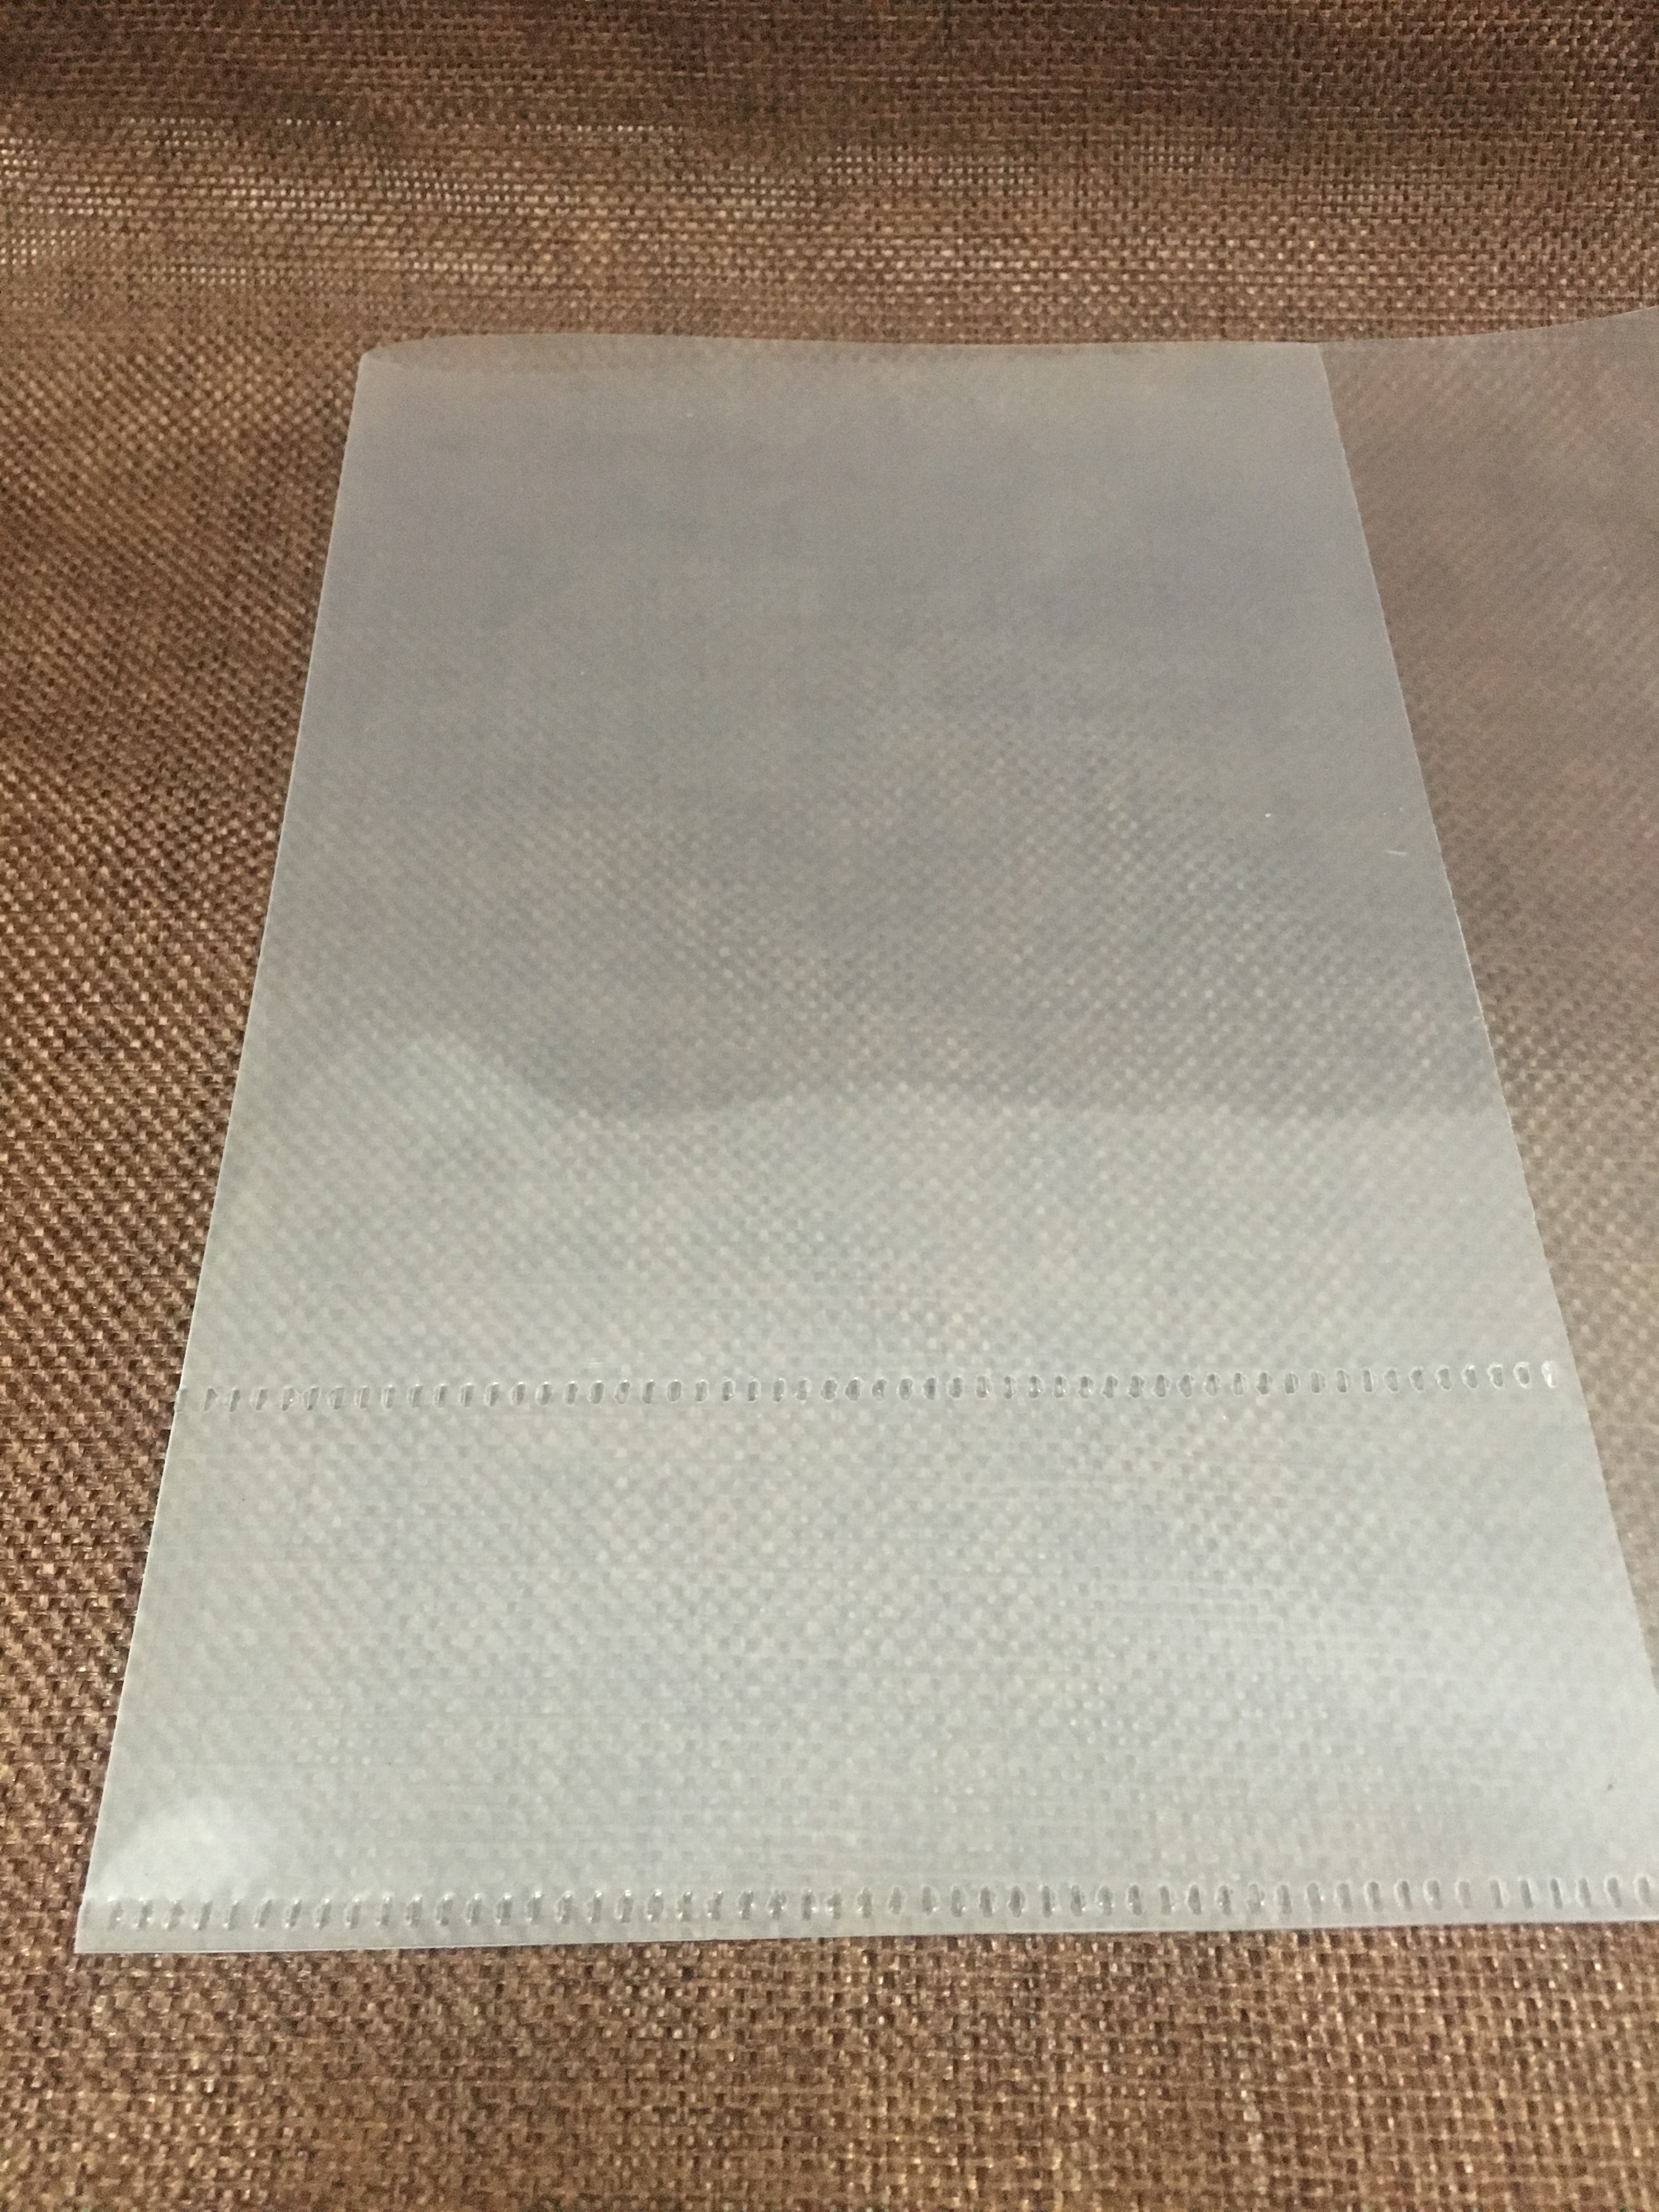 PP磨砂塑料片书套加工A4异形可定制透明磨砂片均可订制工厂直销价格优惠